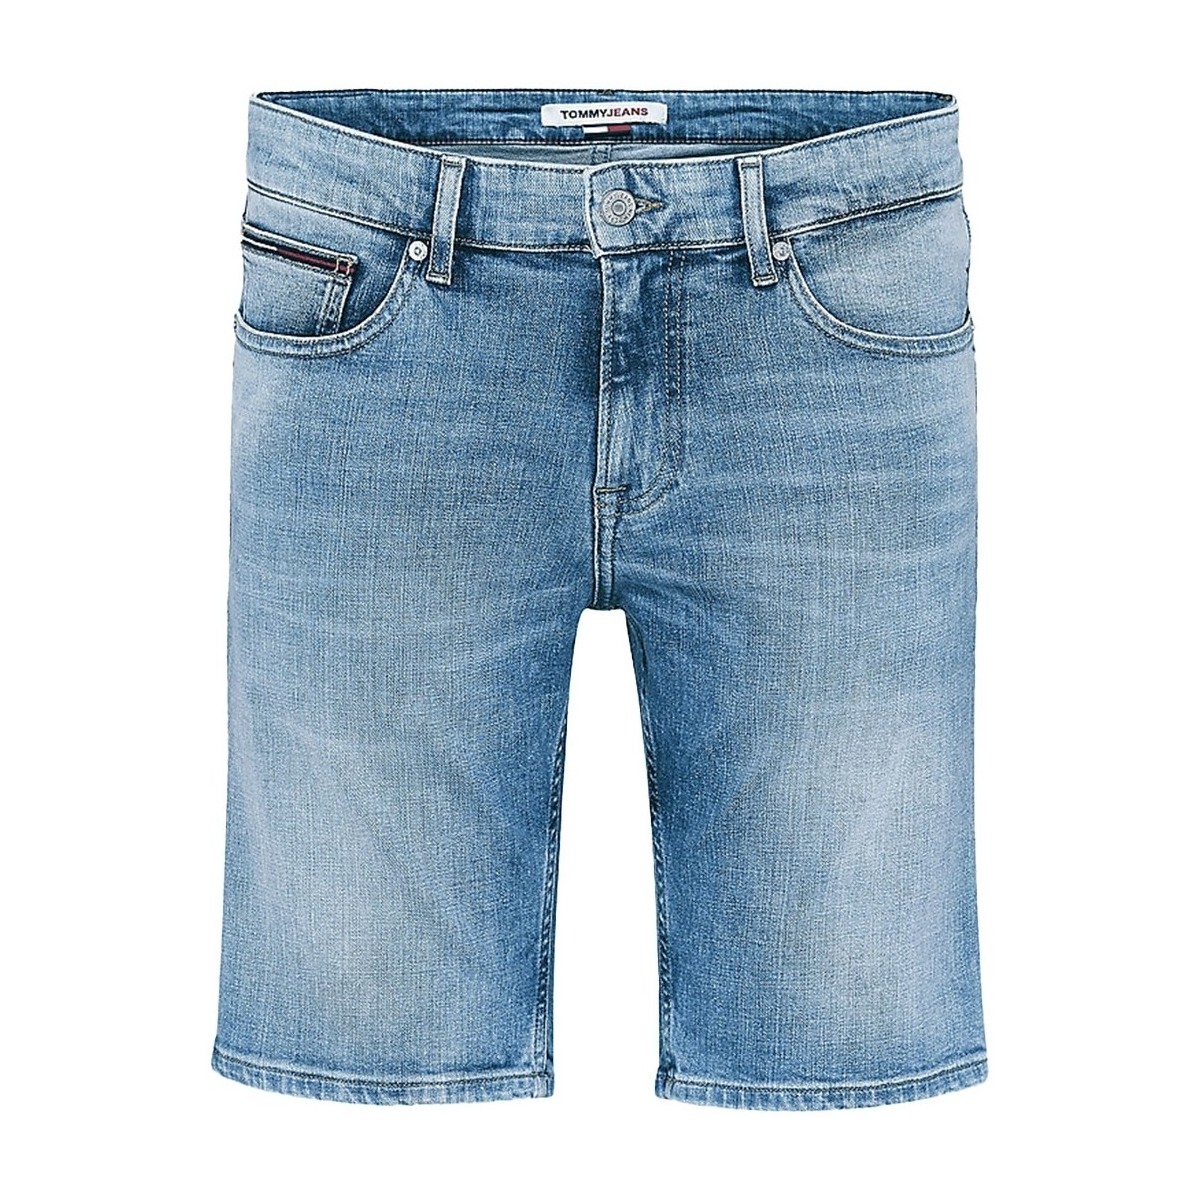 Vêtements Homme Shorts / Bermudas Tommy Jeans Short en jean Scanton  ref 52903 Denim Bleu